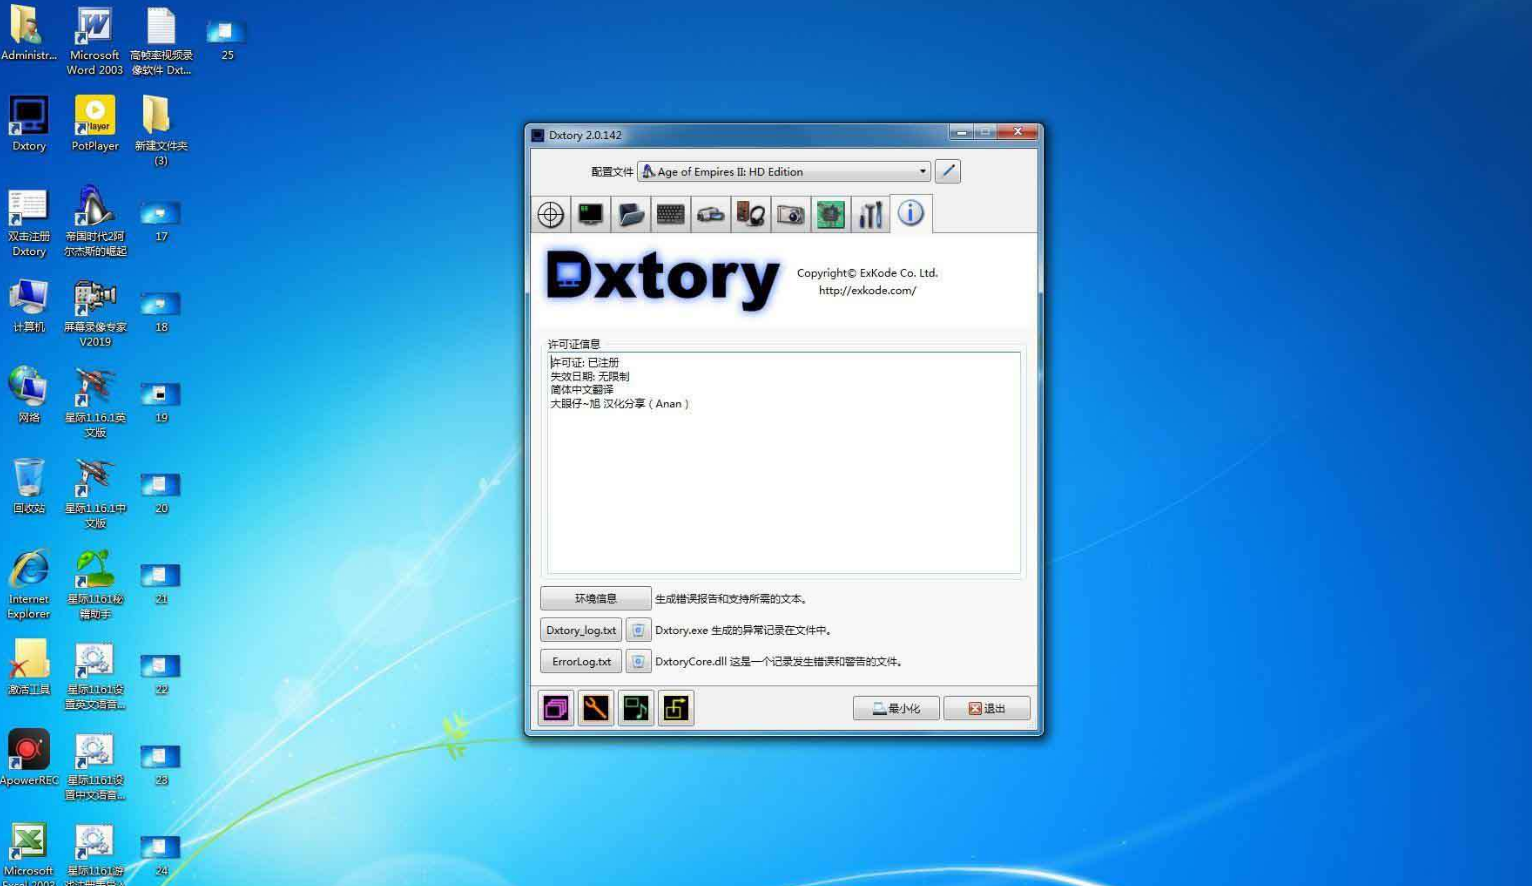 高帧率视频录像软件 Dxtory 2.0.142 中文汉化版